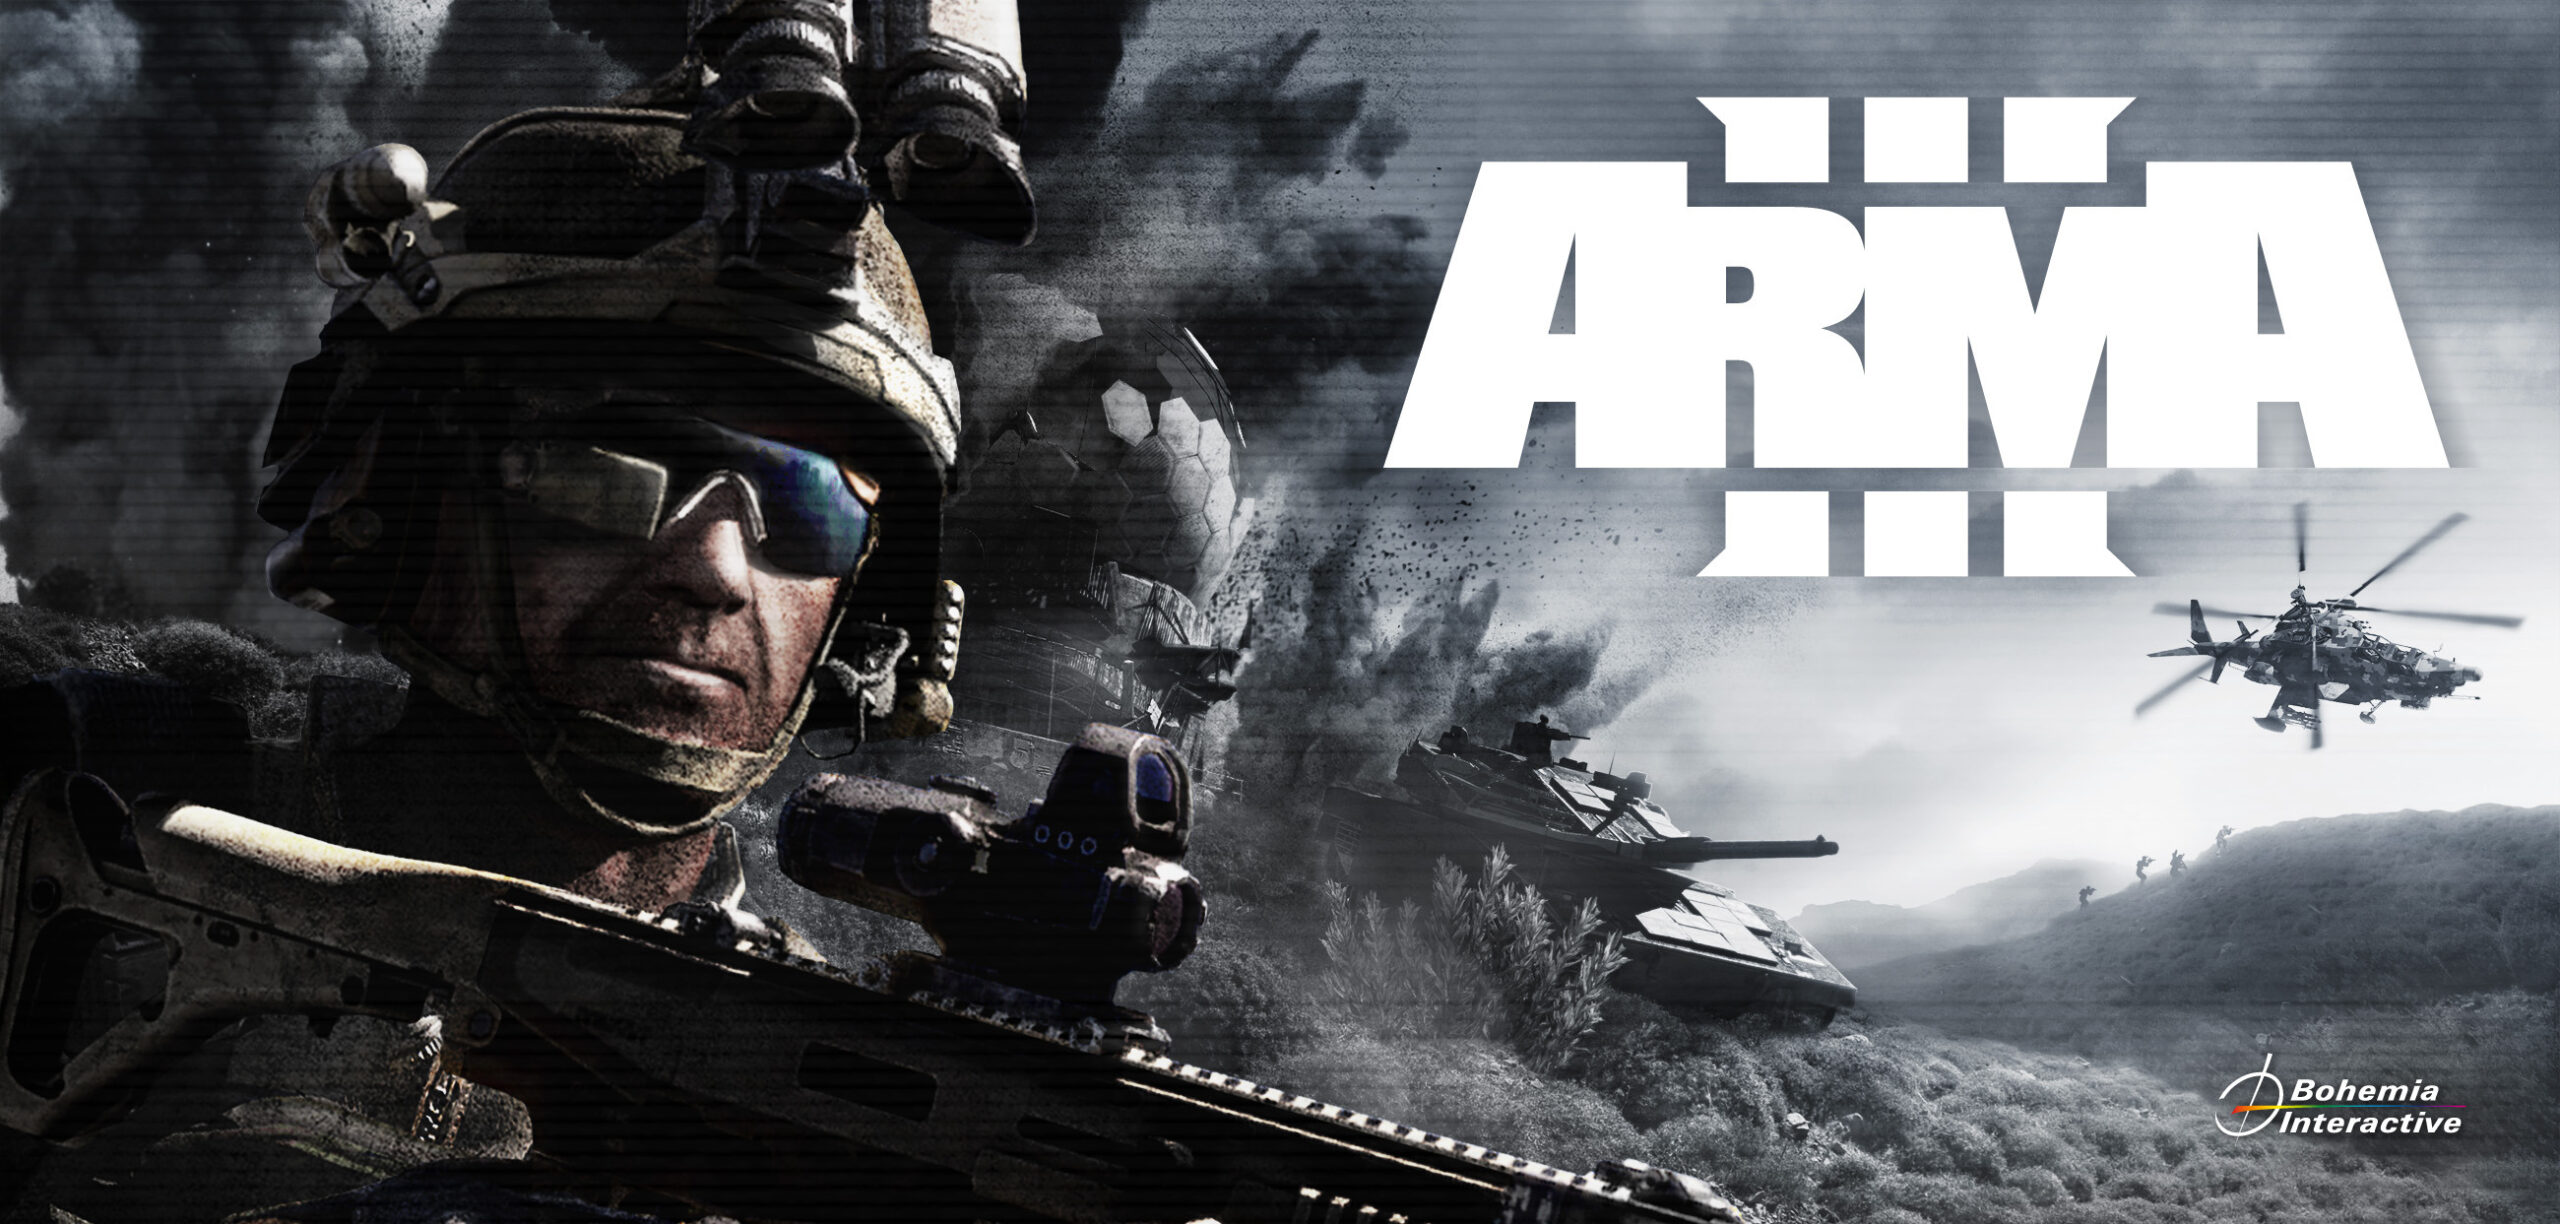 ARMA  武裝突襲:最真實的軍事模擬遊戲 專給有被虐傾向的軍事玩家